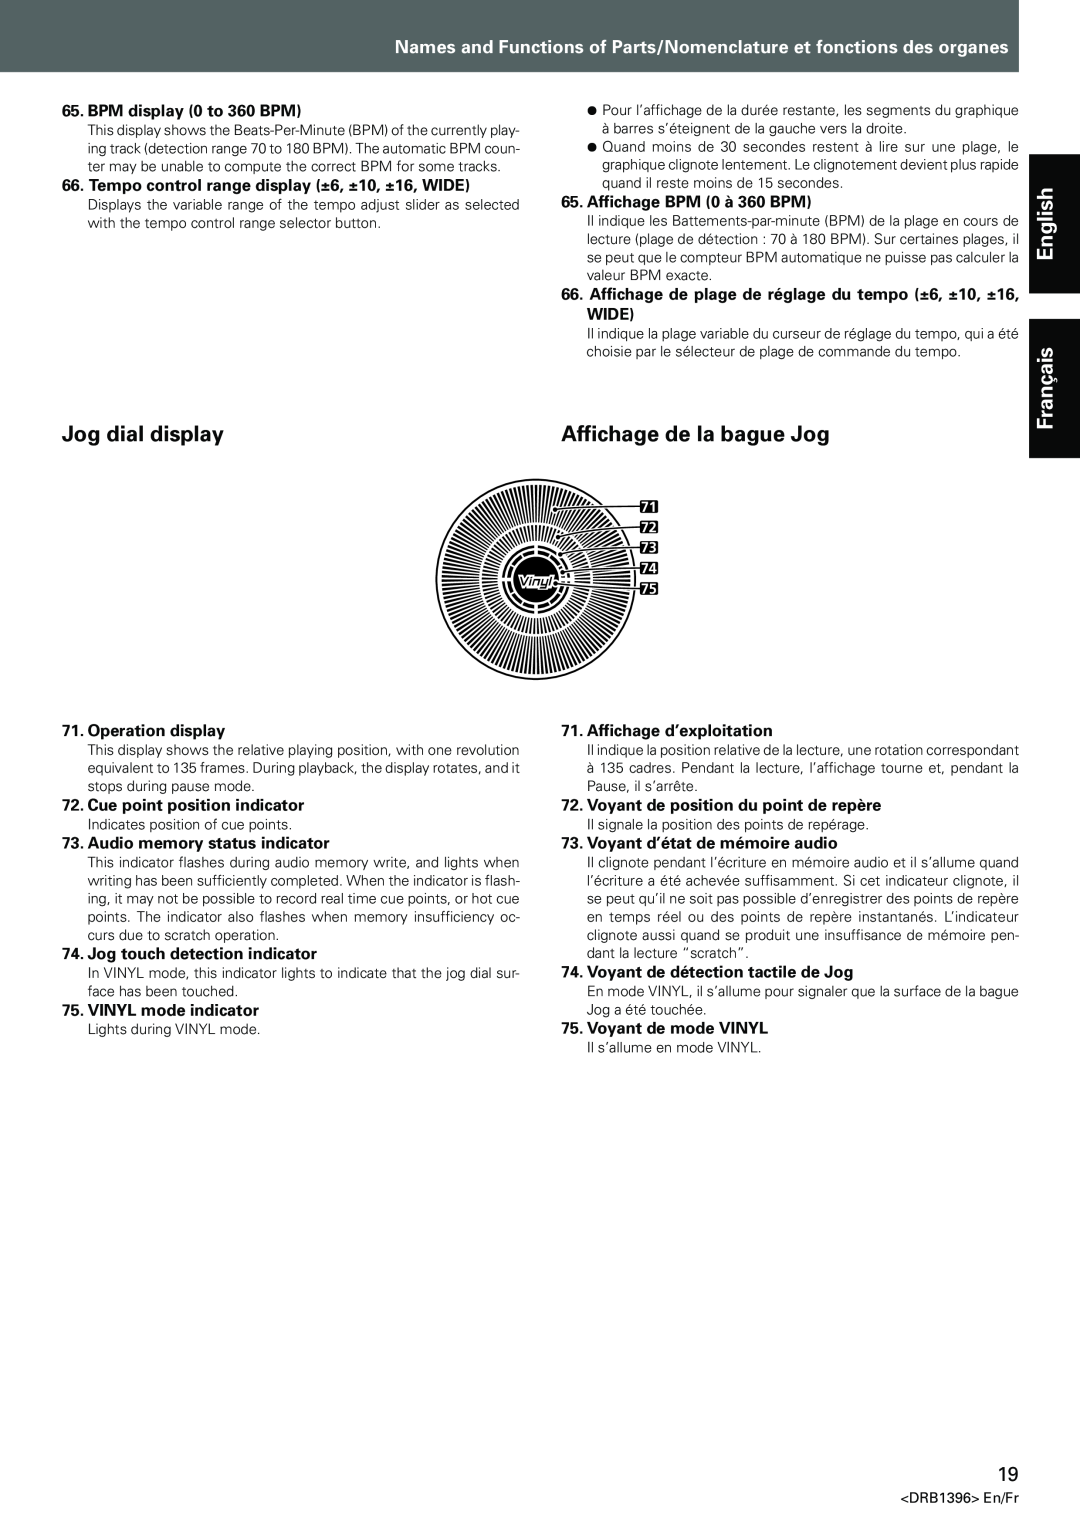 Pioneer CDJ-1000MK3 manual Jog dial display, Affichage de la bague Jog, Français 